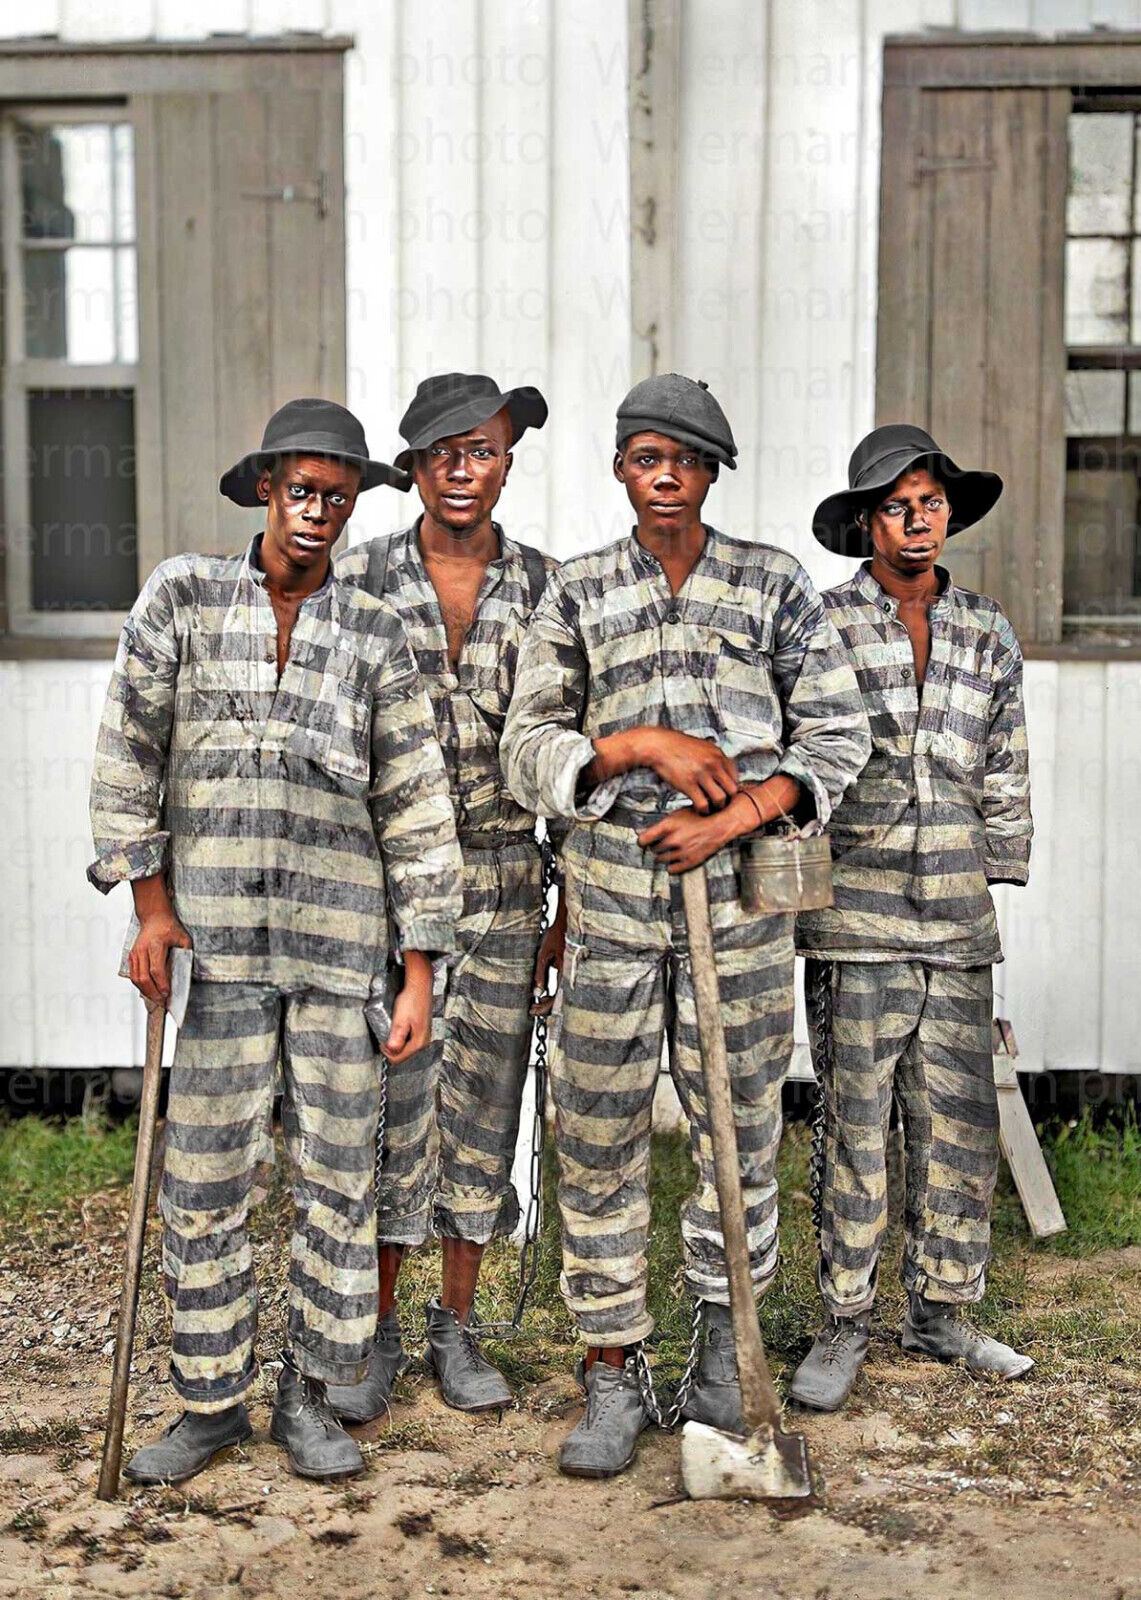 Georgia Prison Chain Gang in 1905 RARE COLOR Photo 600